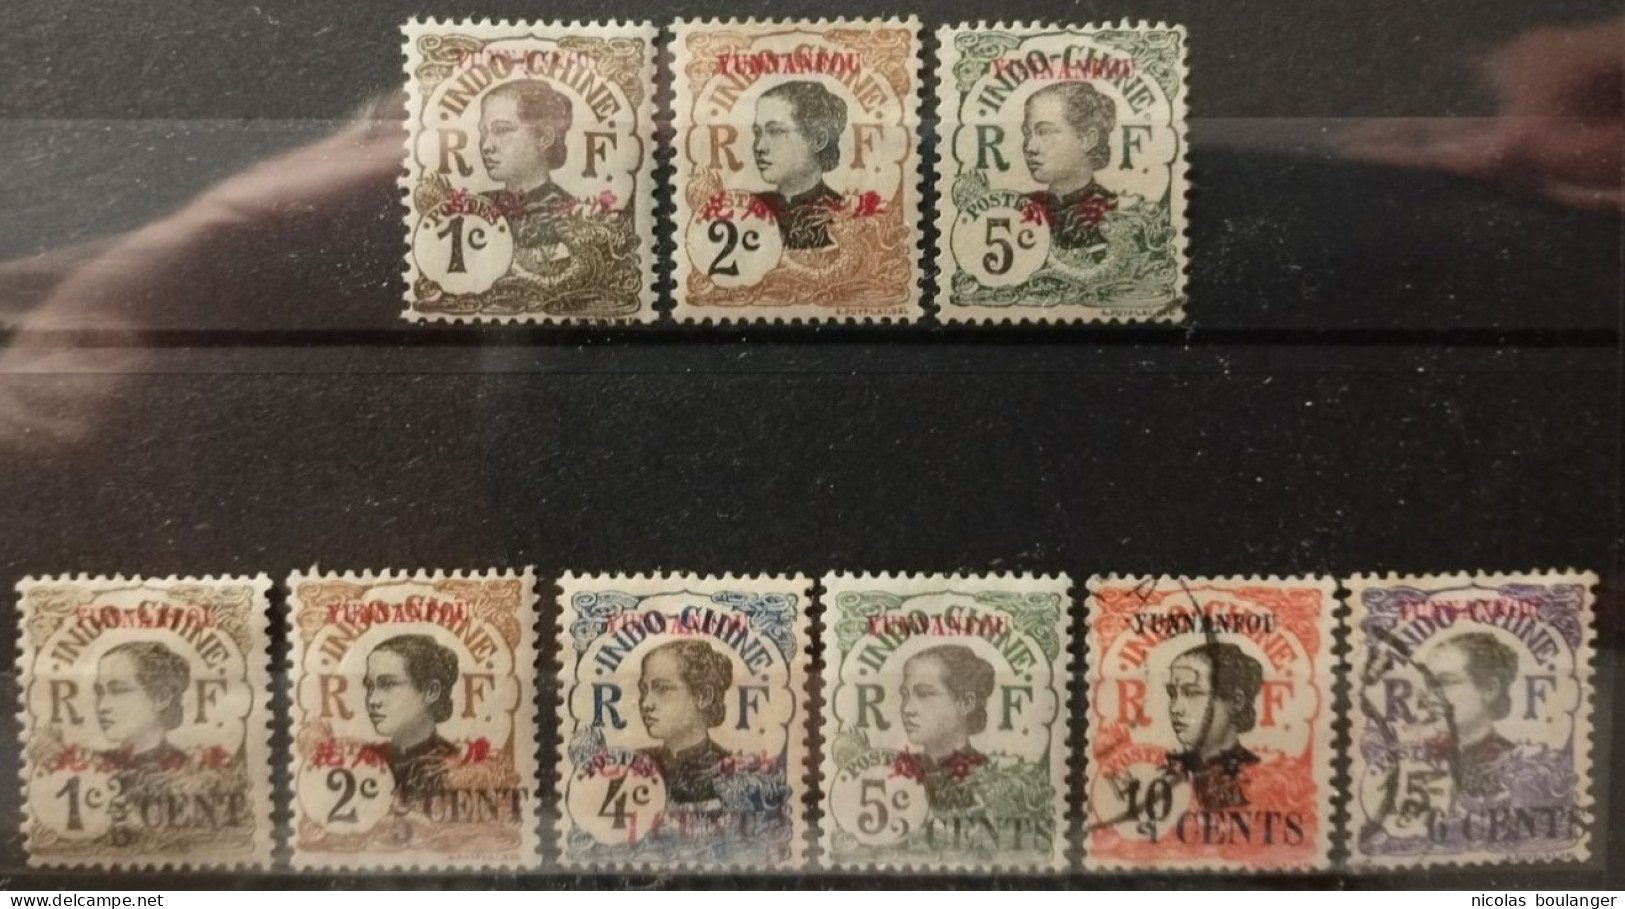 Yunnanfou 1908-19 / Yvert N°33-34 + 36 + 50-55 / * Et Used - Unused Stamps